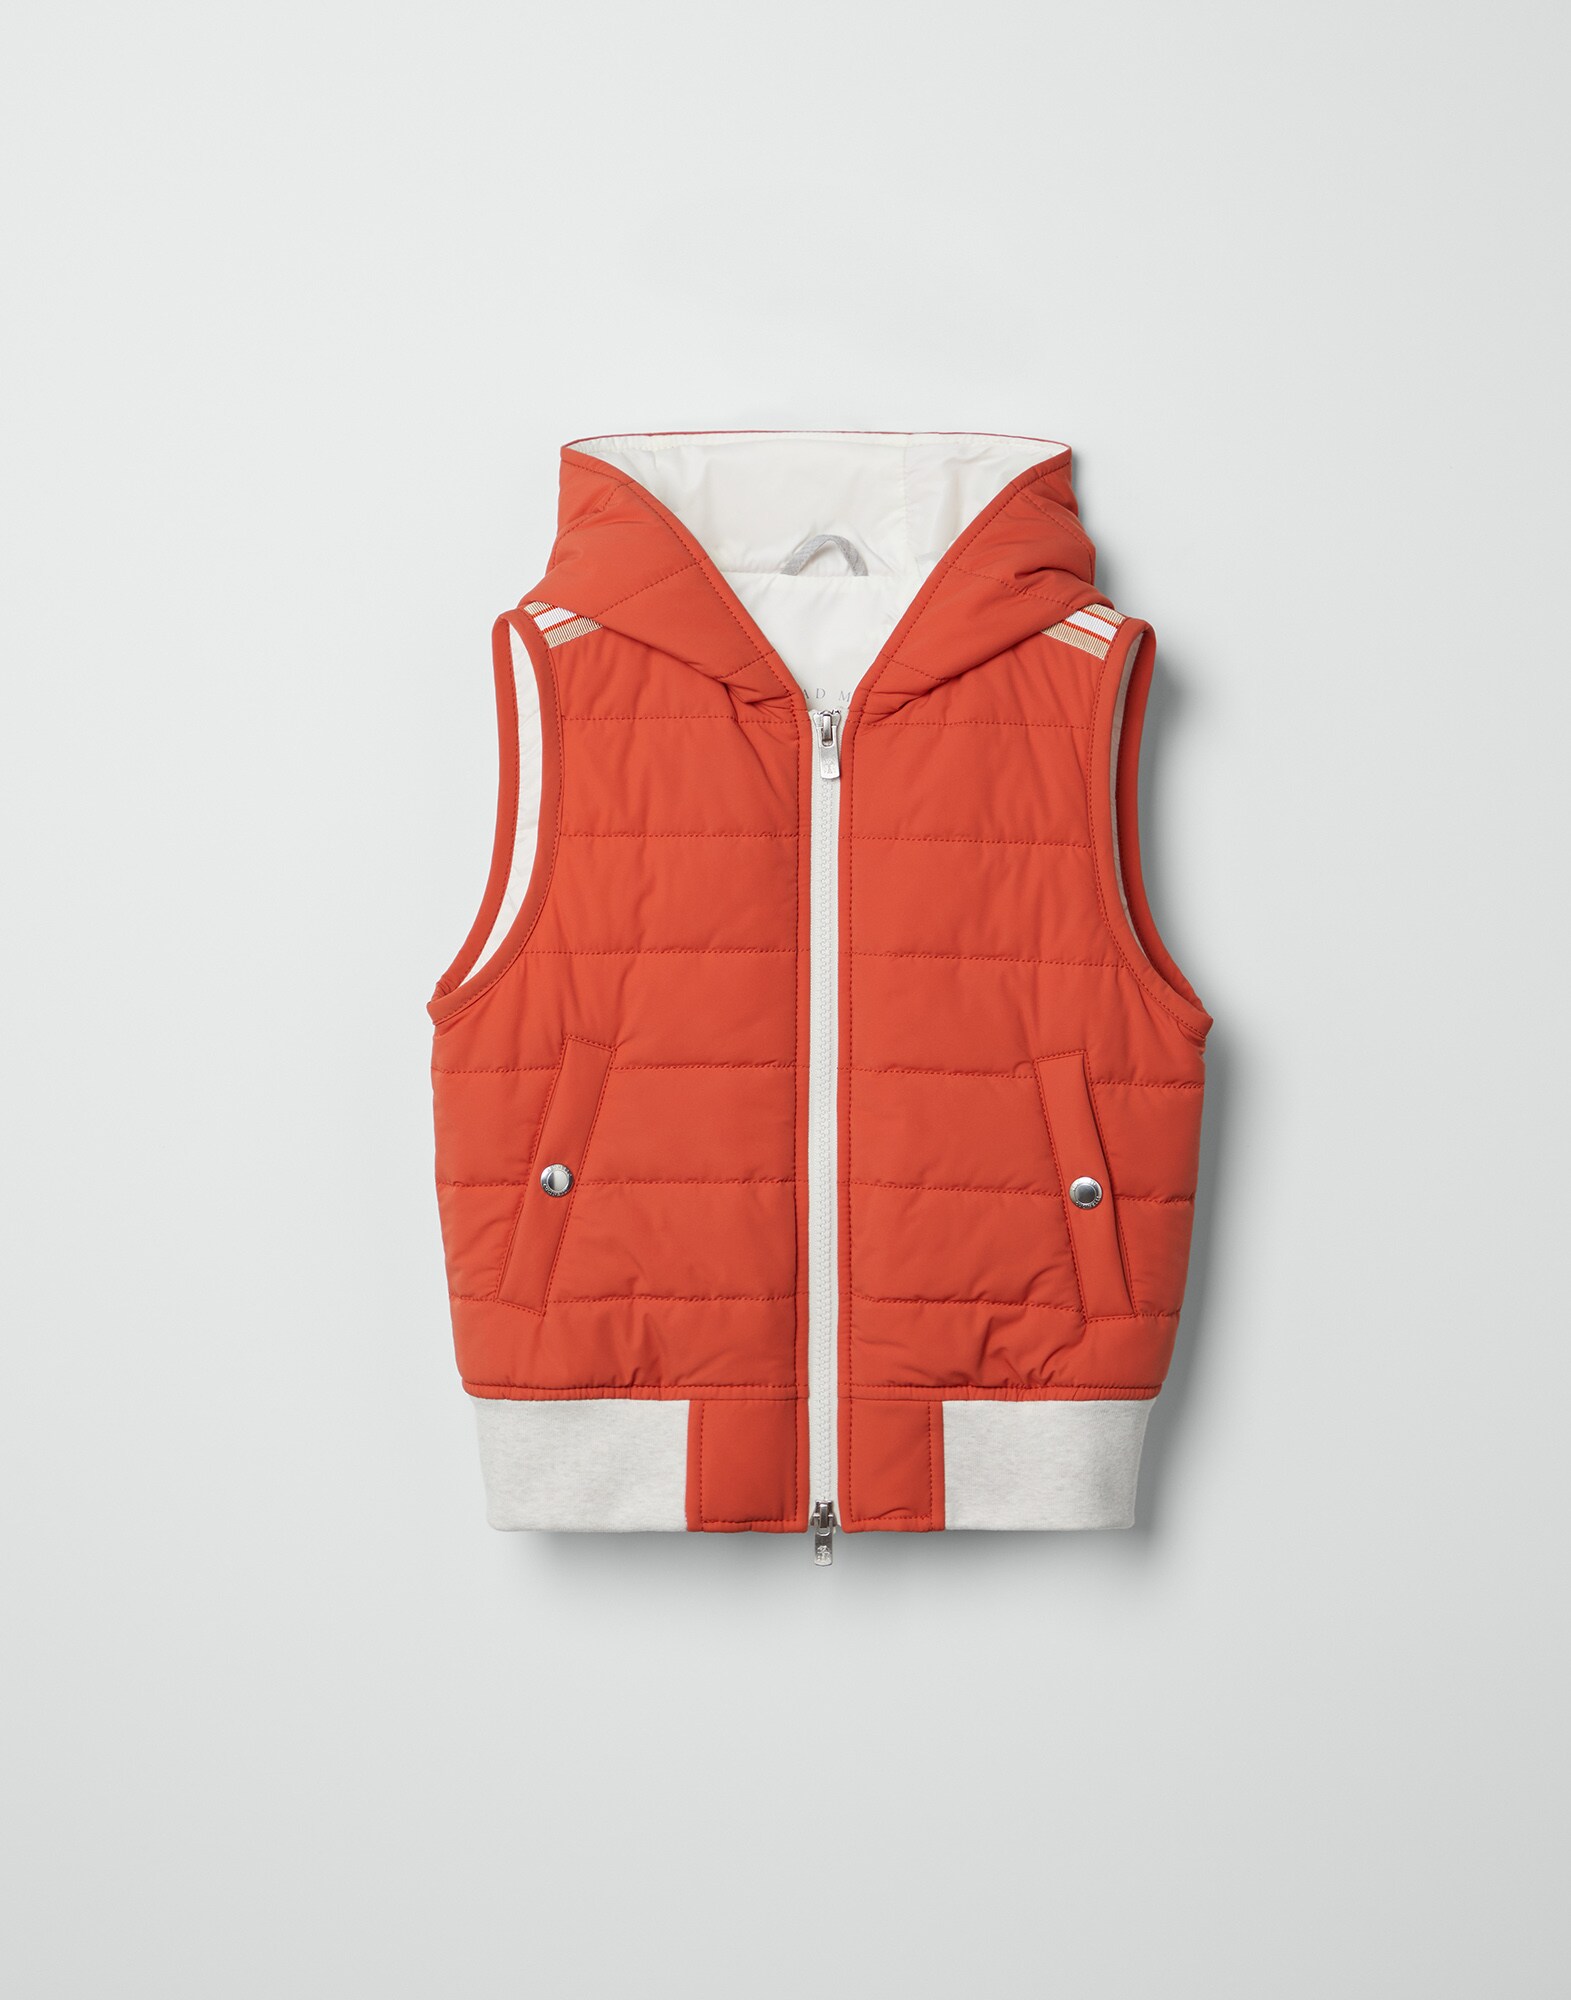 Outerwear vest